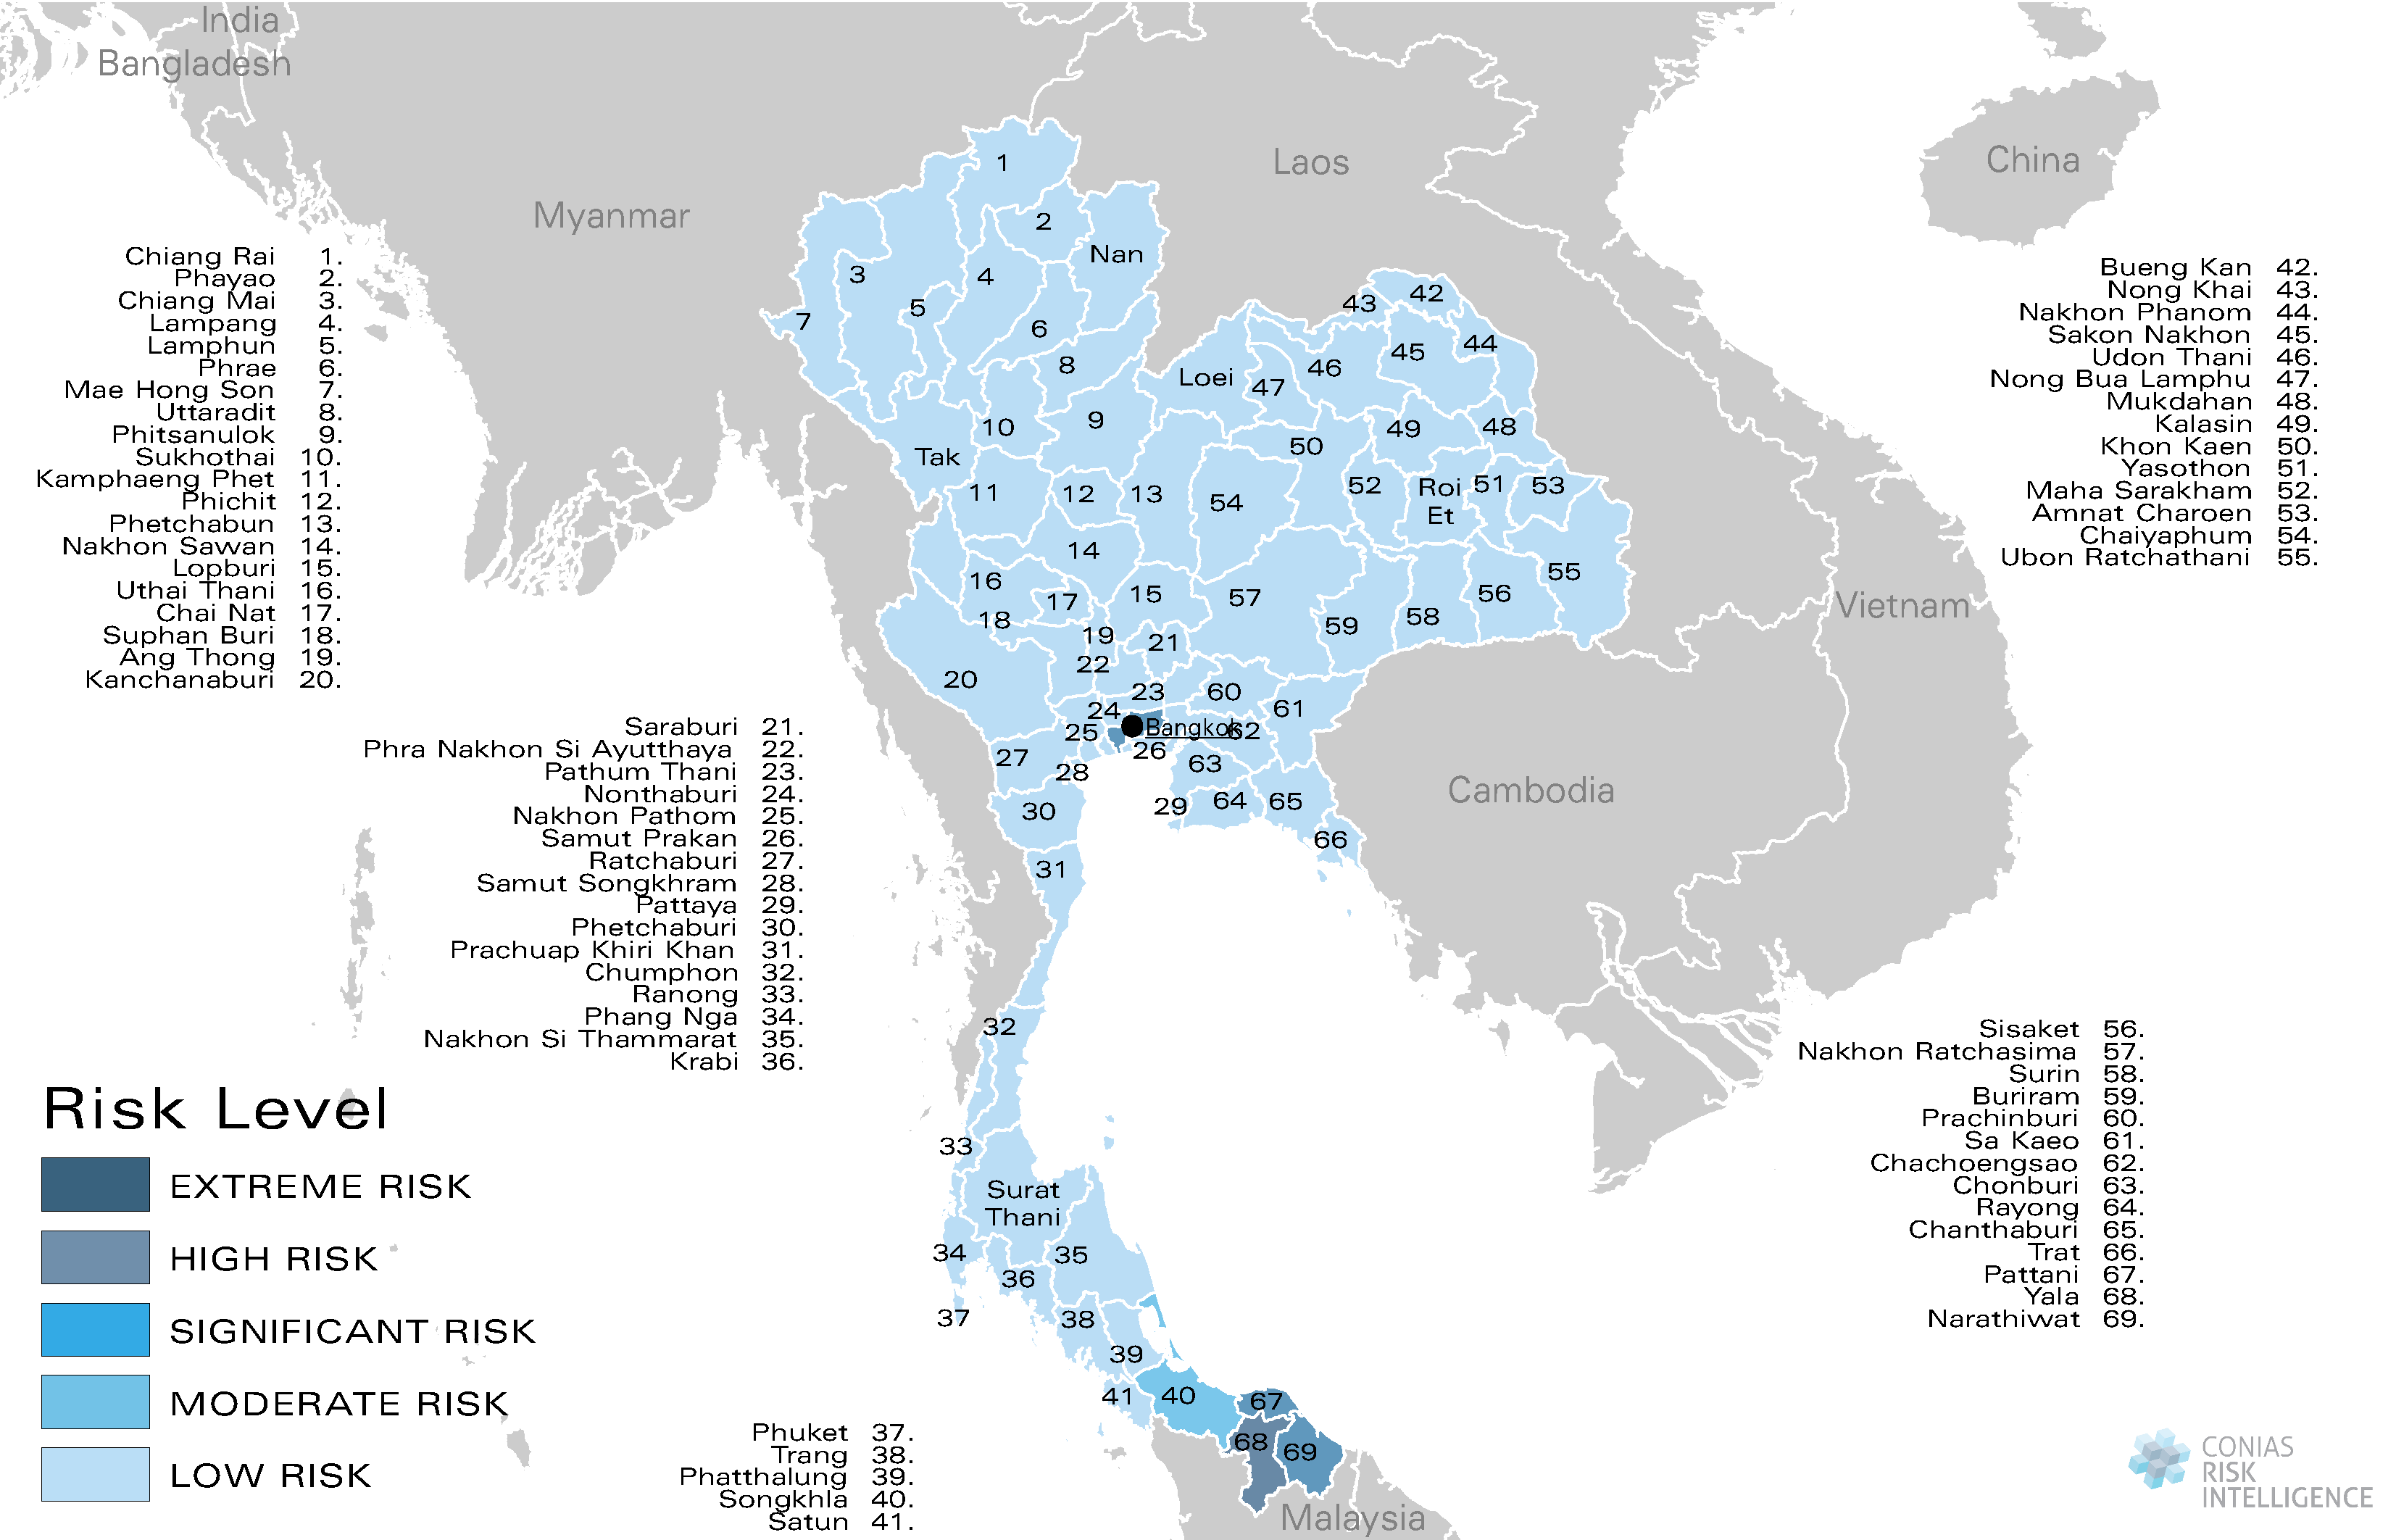 CONIAS Political Risk Maps Thailand